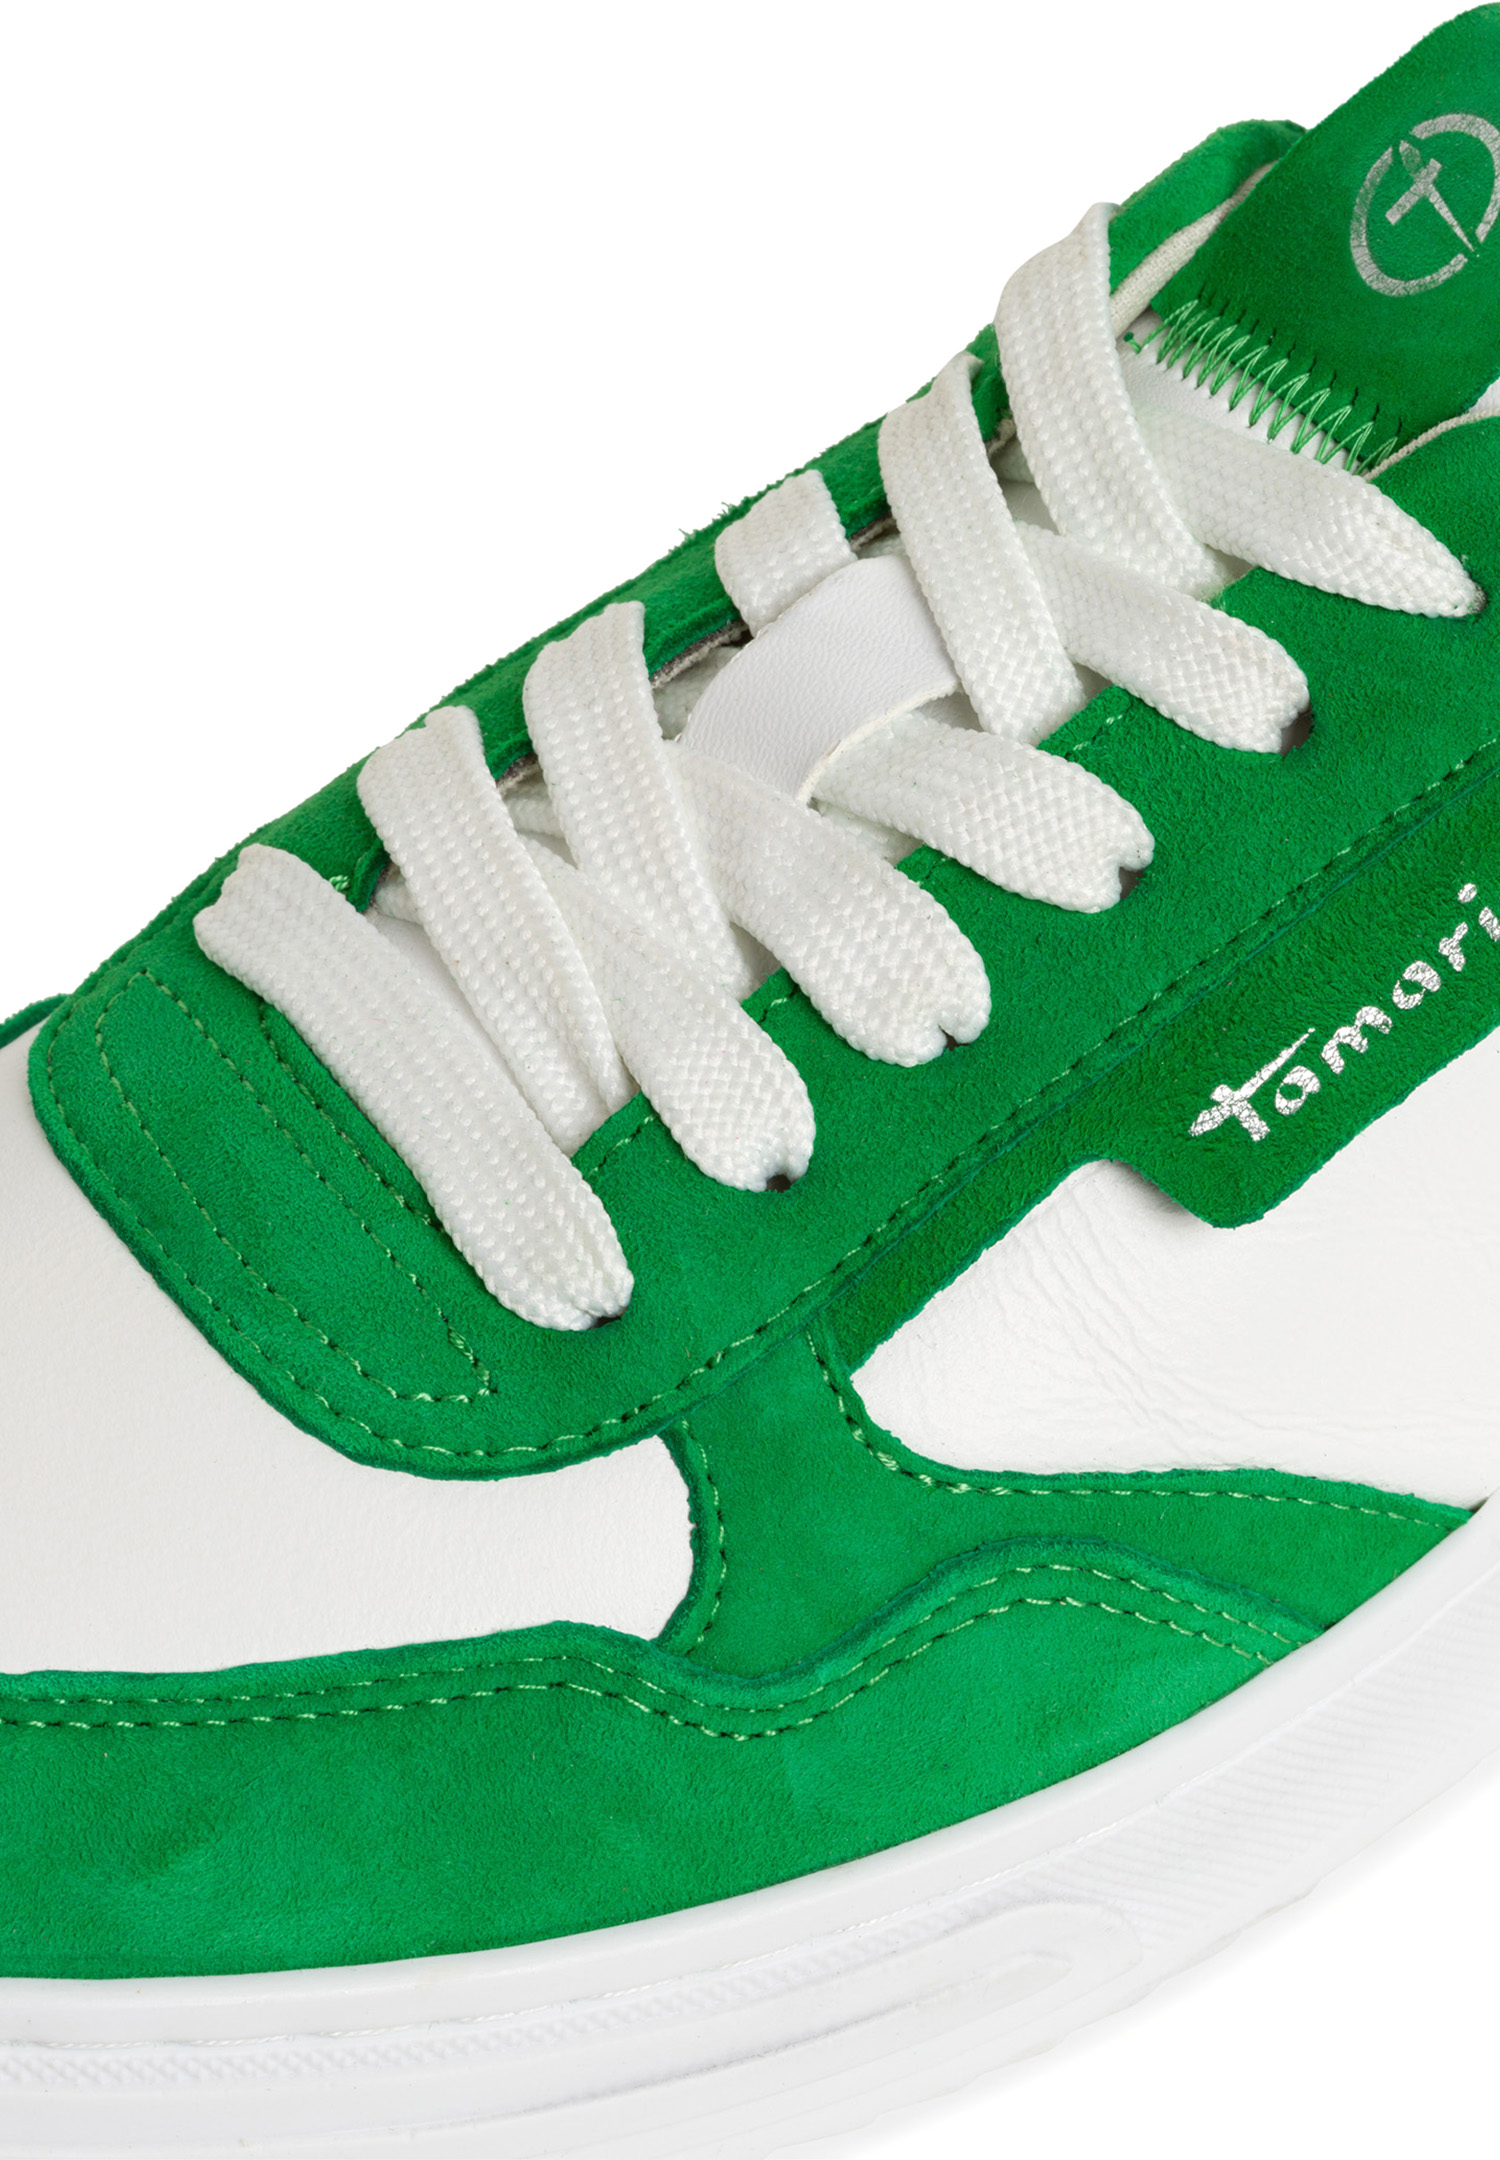 Tamaris 1-23617-42 700 Damen Low Top Sneaker Frauen Schuhe M2361742 grün